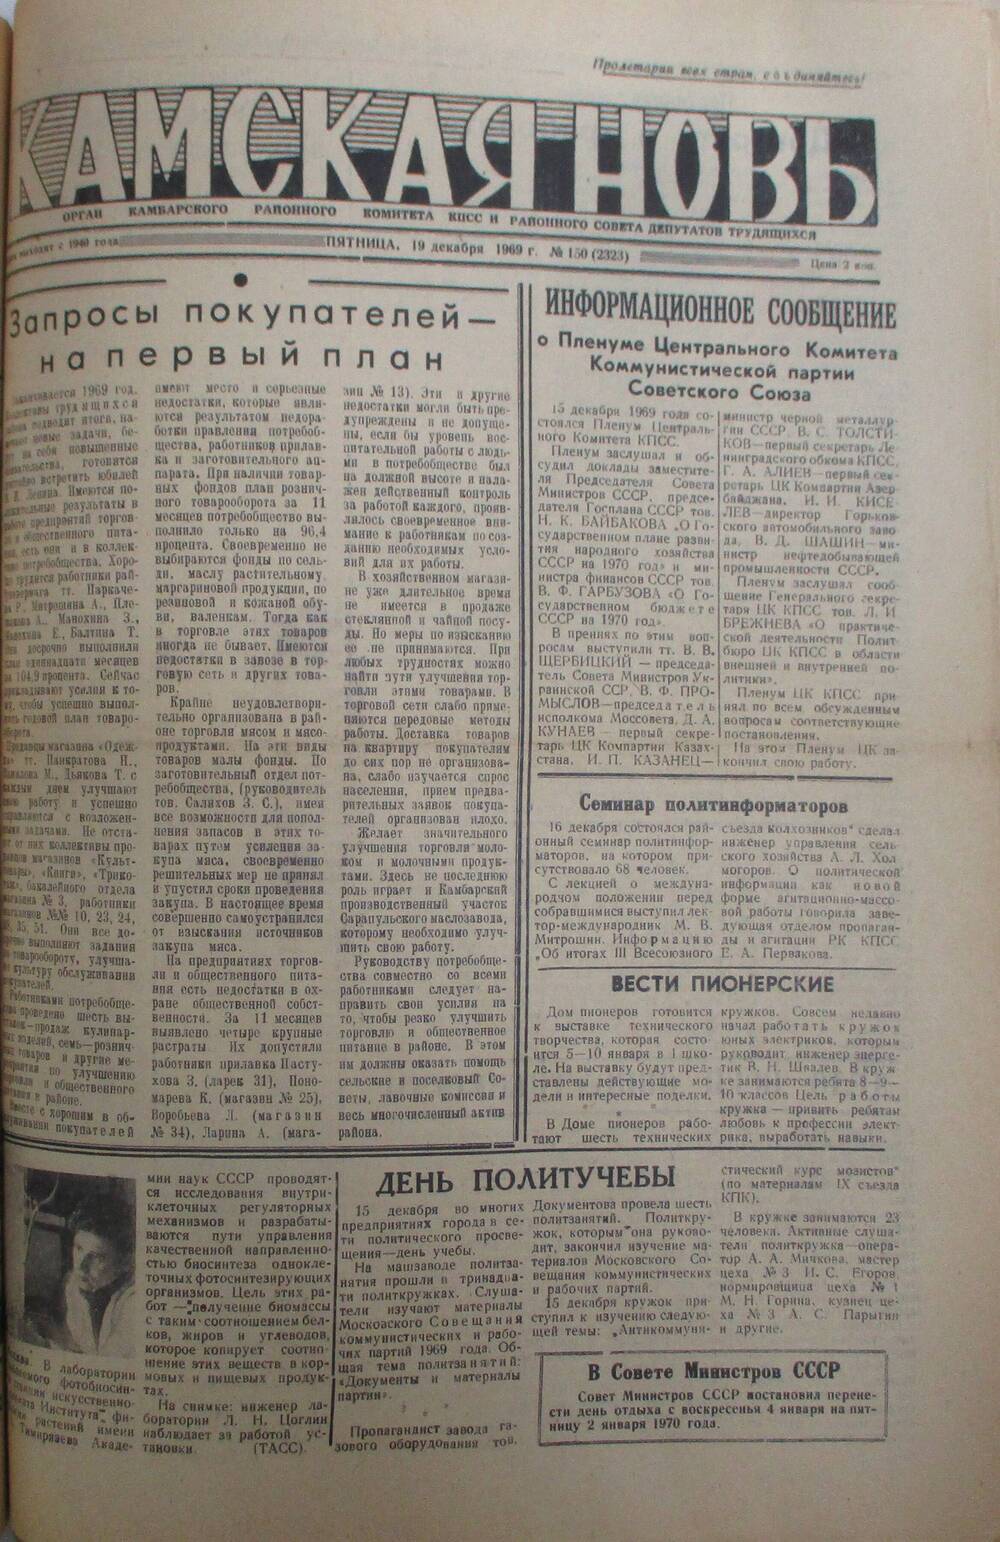 Газеты Камская новь за 1969 год, орган Камбарского райсовета и  РККПСС, с №1 по №66, с №68 по №156. №150.